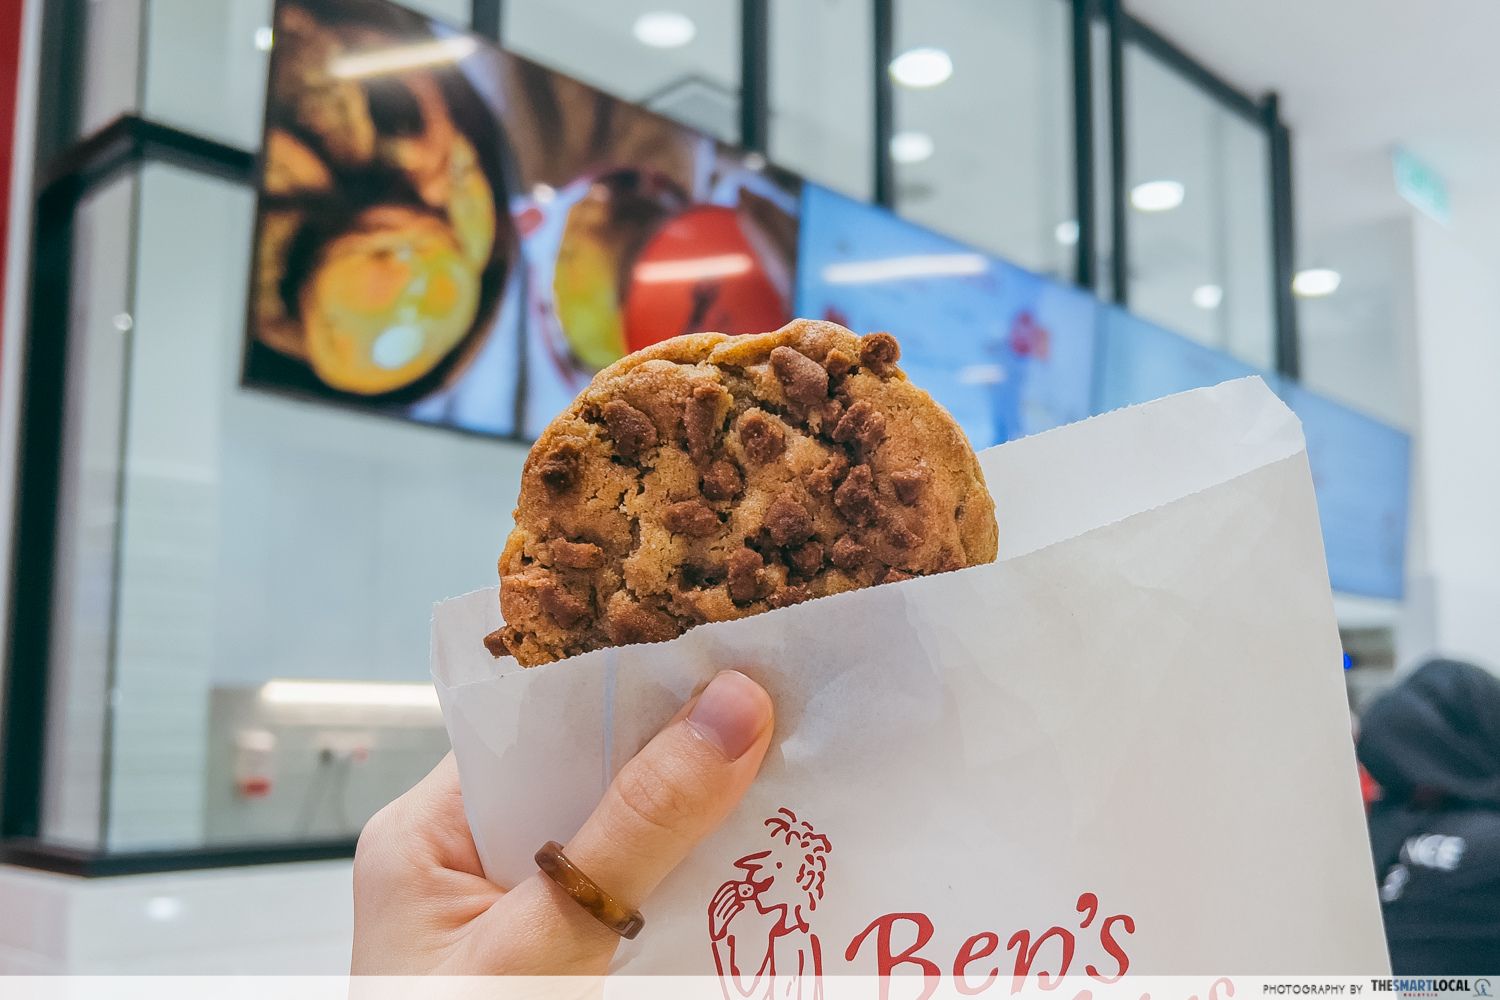 Ben's Cookies in KL - cookies